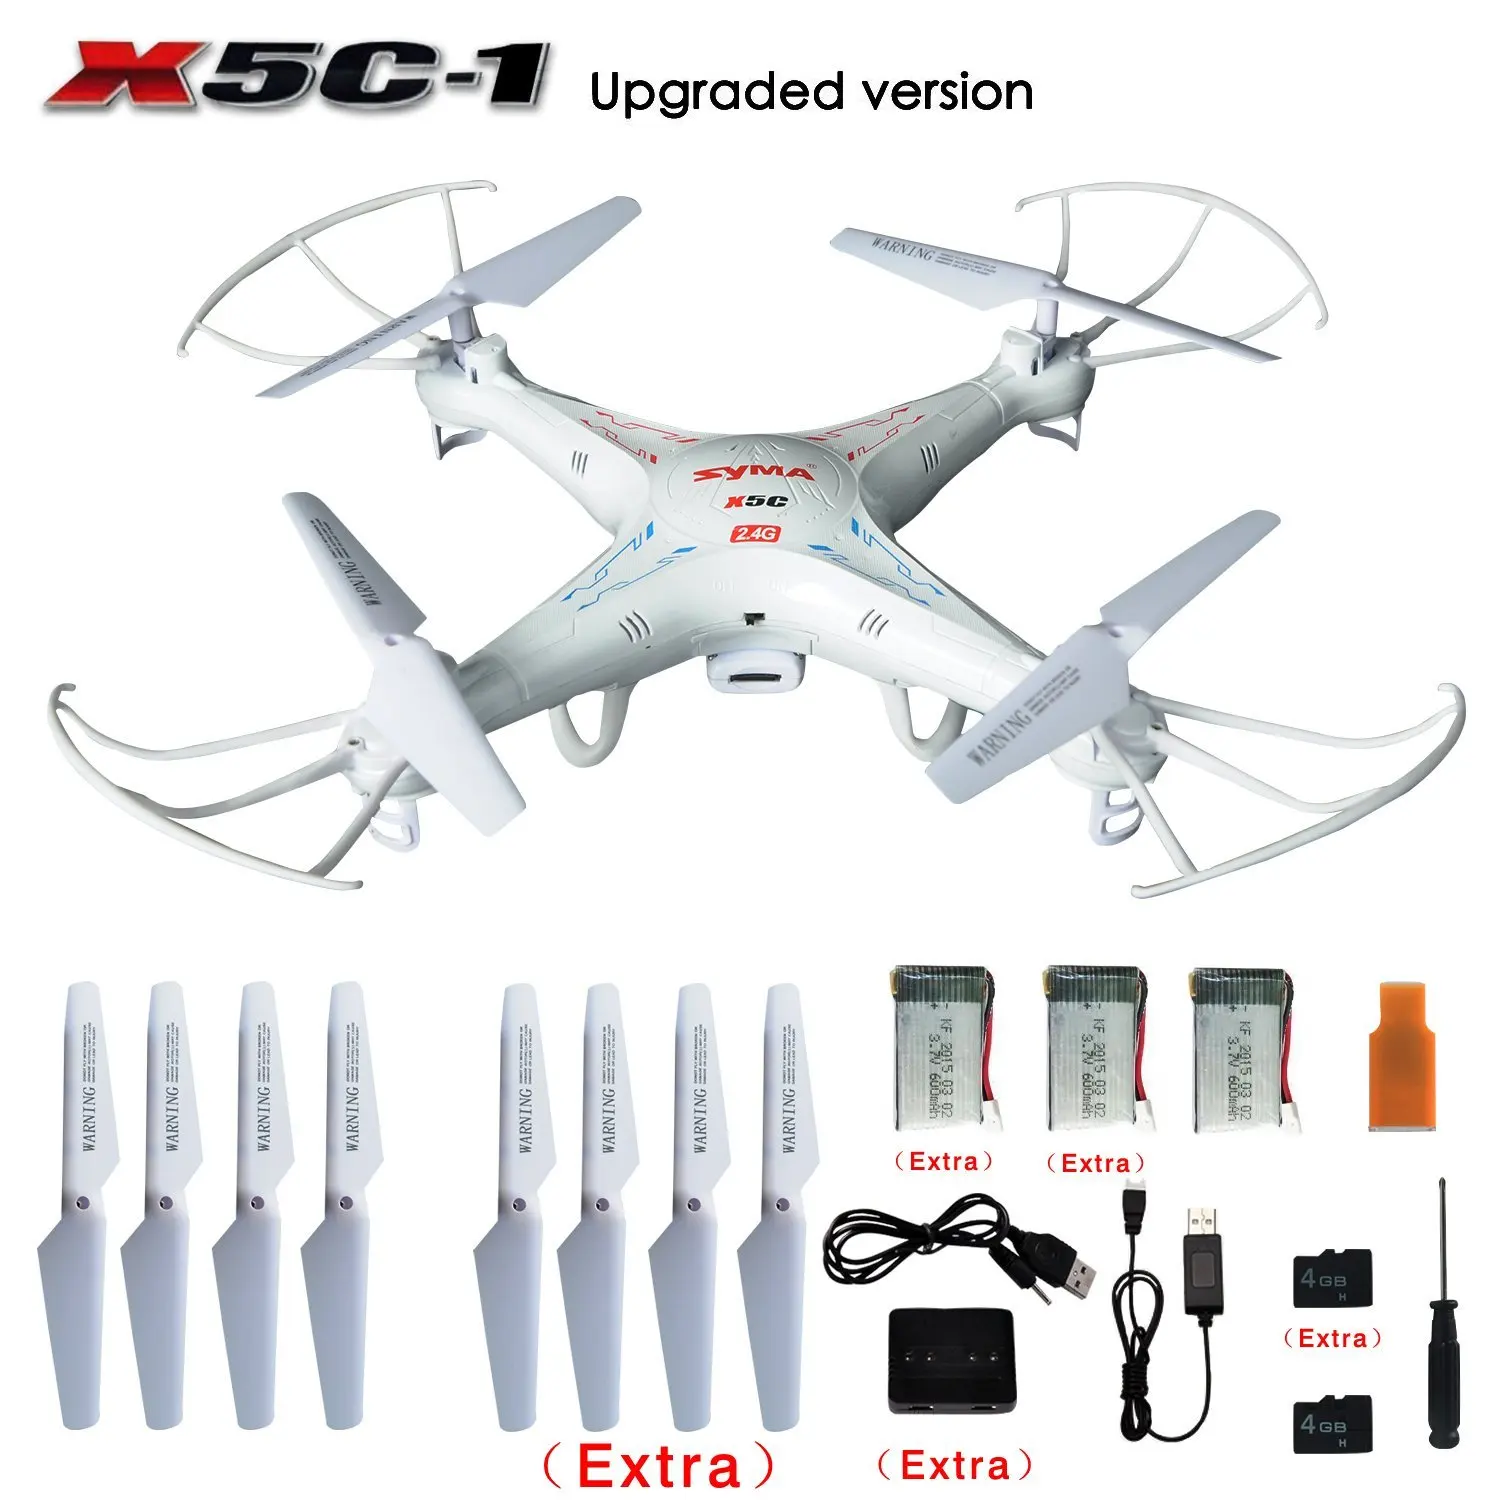 Originale SYMA X5C/ X5C-1 Explorers 2.4G 4CH 6-Axis Gyro RC Quadcopter con fotocamera HD + batterie Extra 2 pezzi + pale dell'elica + 4GB